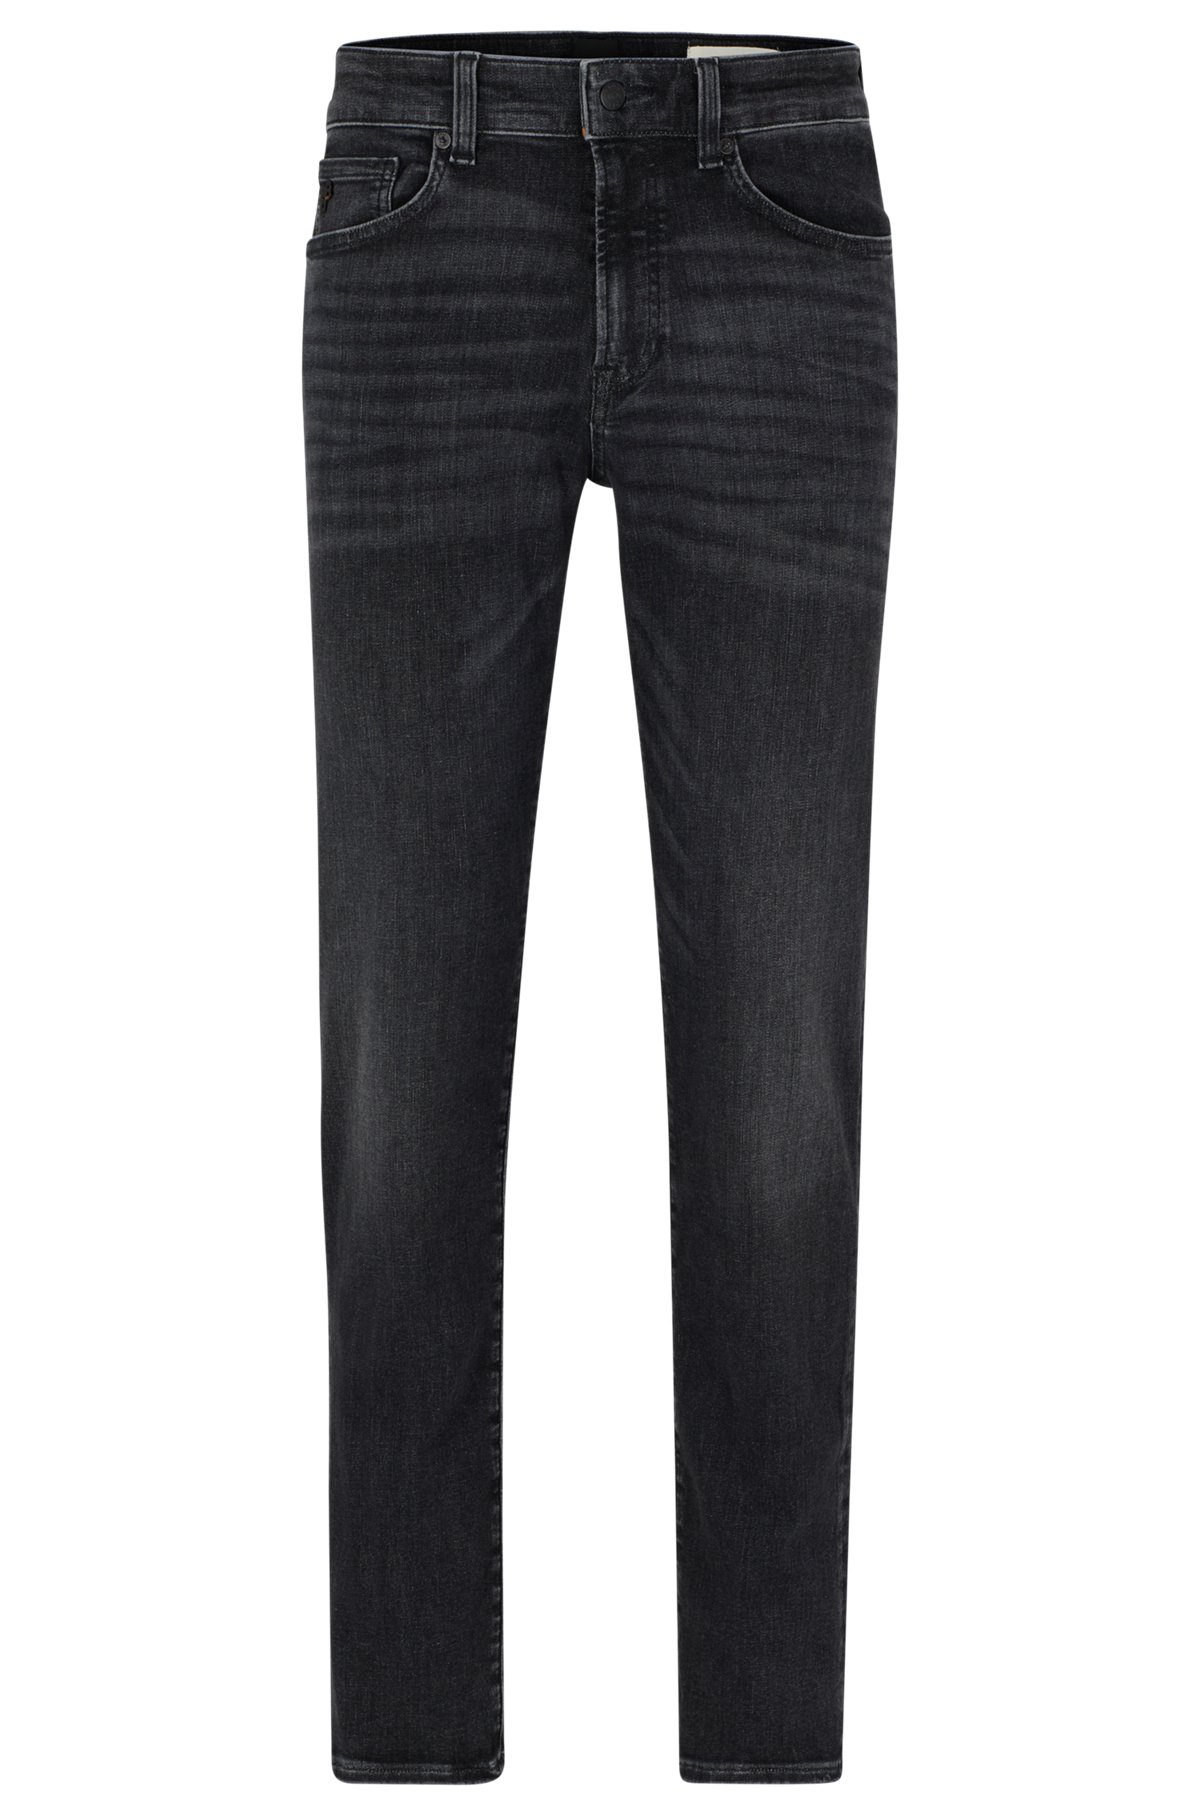 Regular-ft jeans in black super-stretch denim, Black